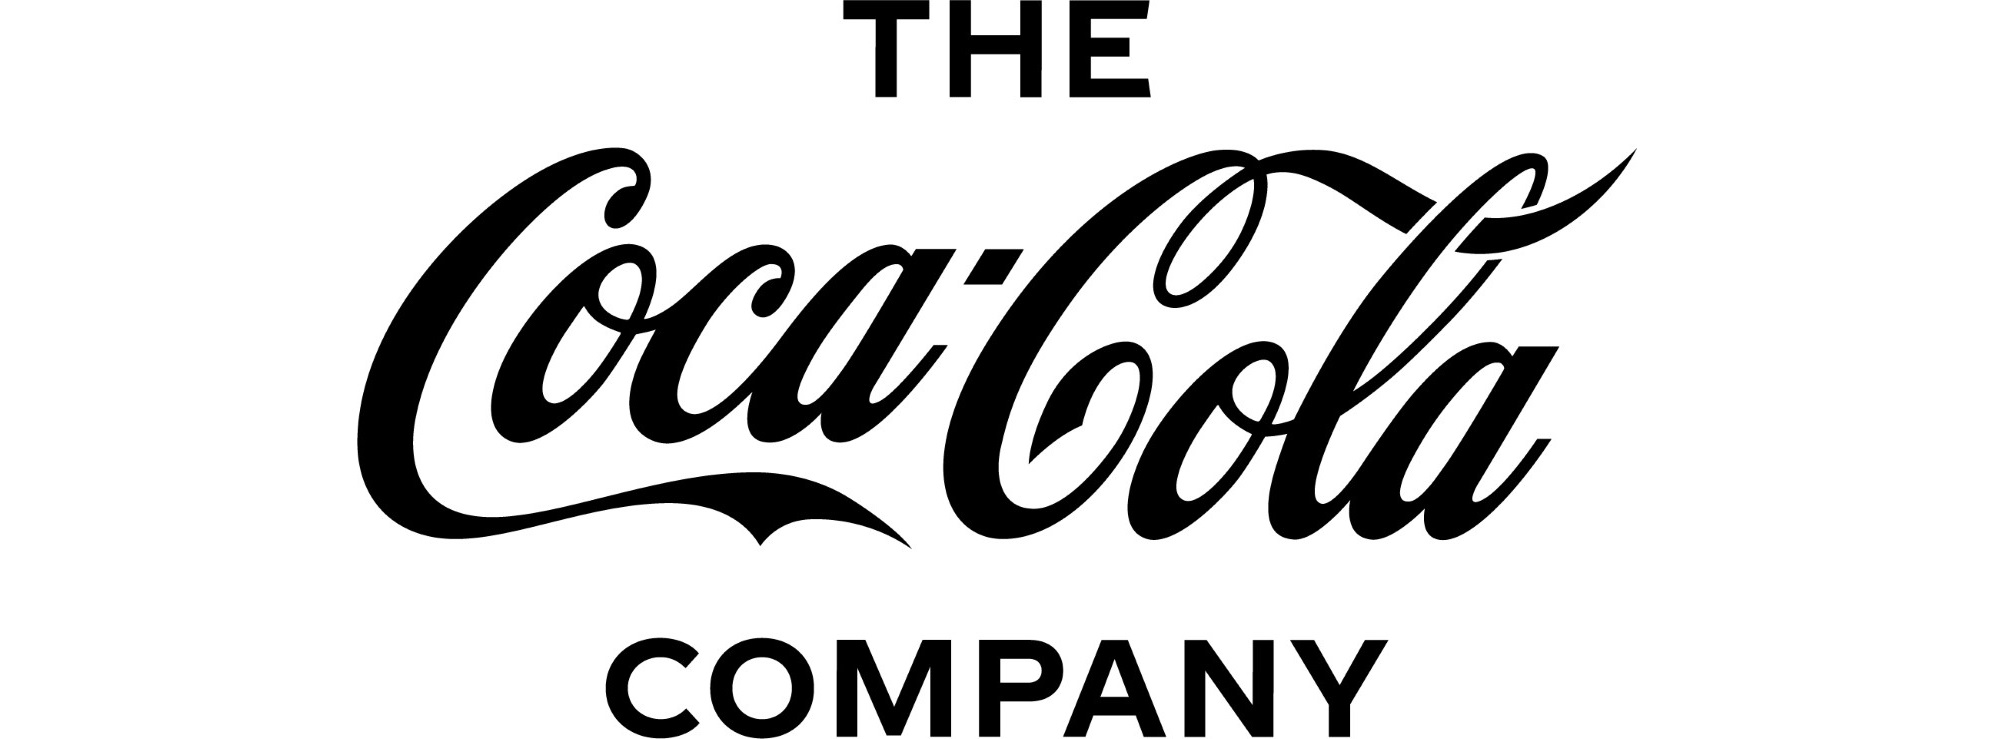 Coca-Cola_Corporate_Mark_Primary_Logo_Black_NEW (2)